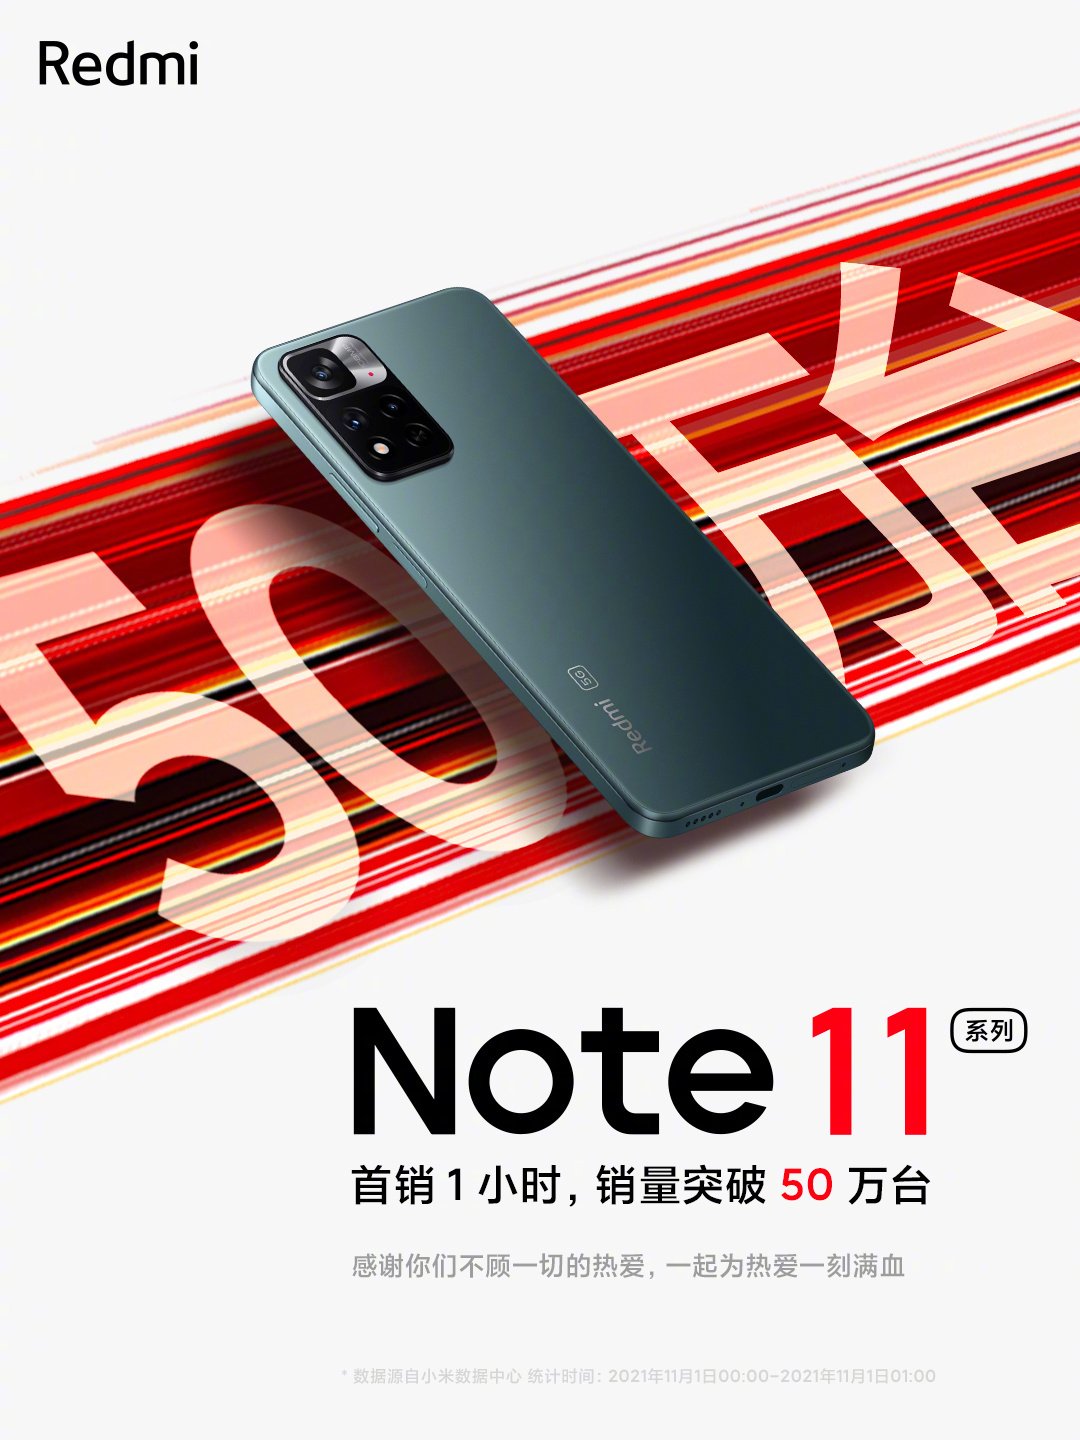 スマホアクセサリー iPhone用ケース Redmi Note 11 series sold more than 500,000 units within an hour 